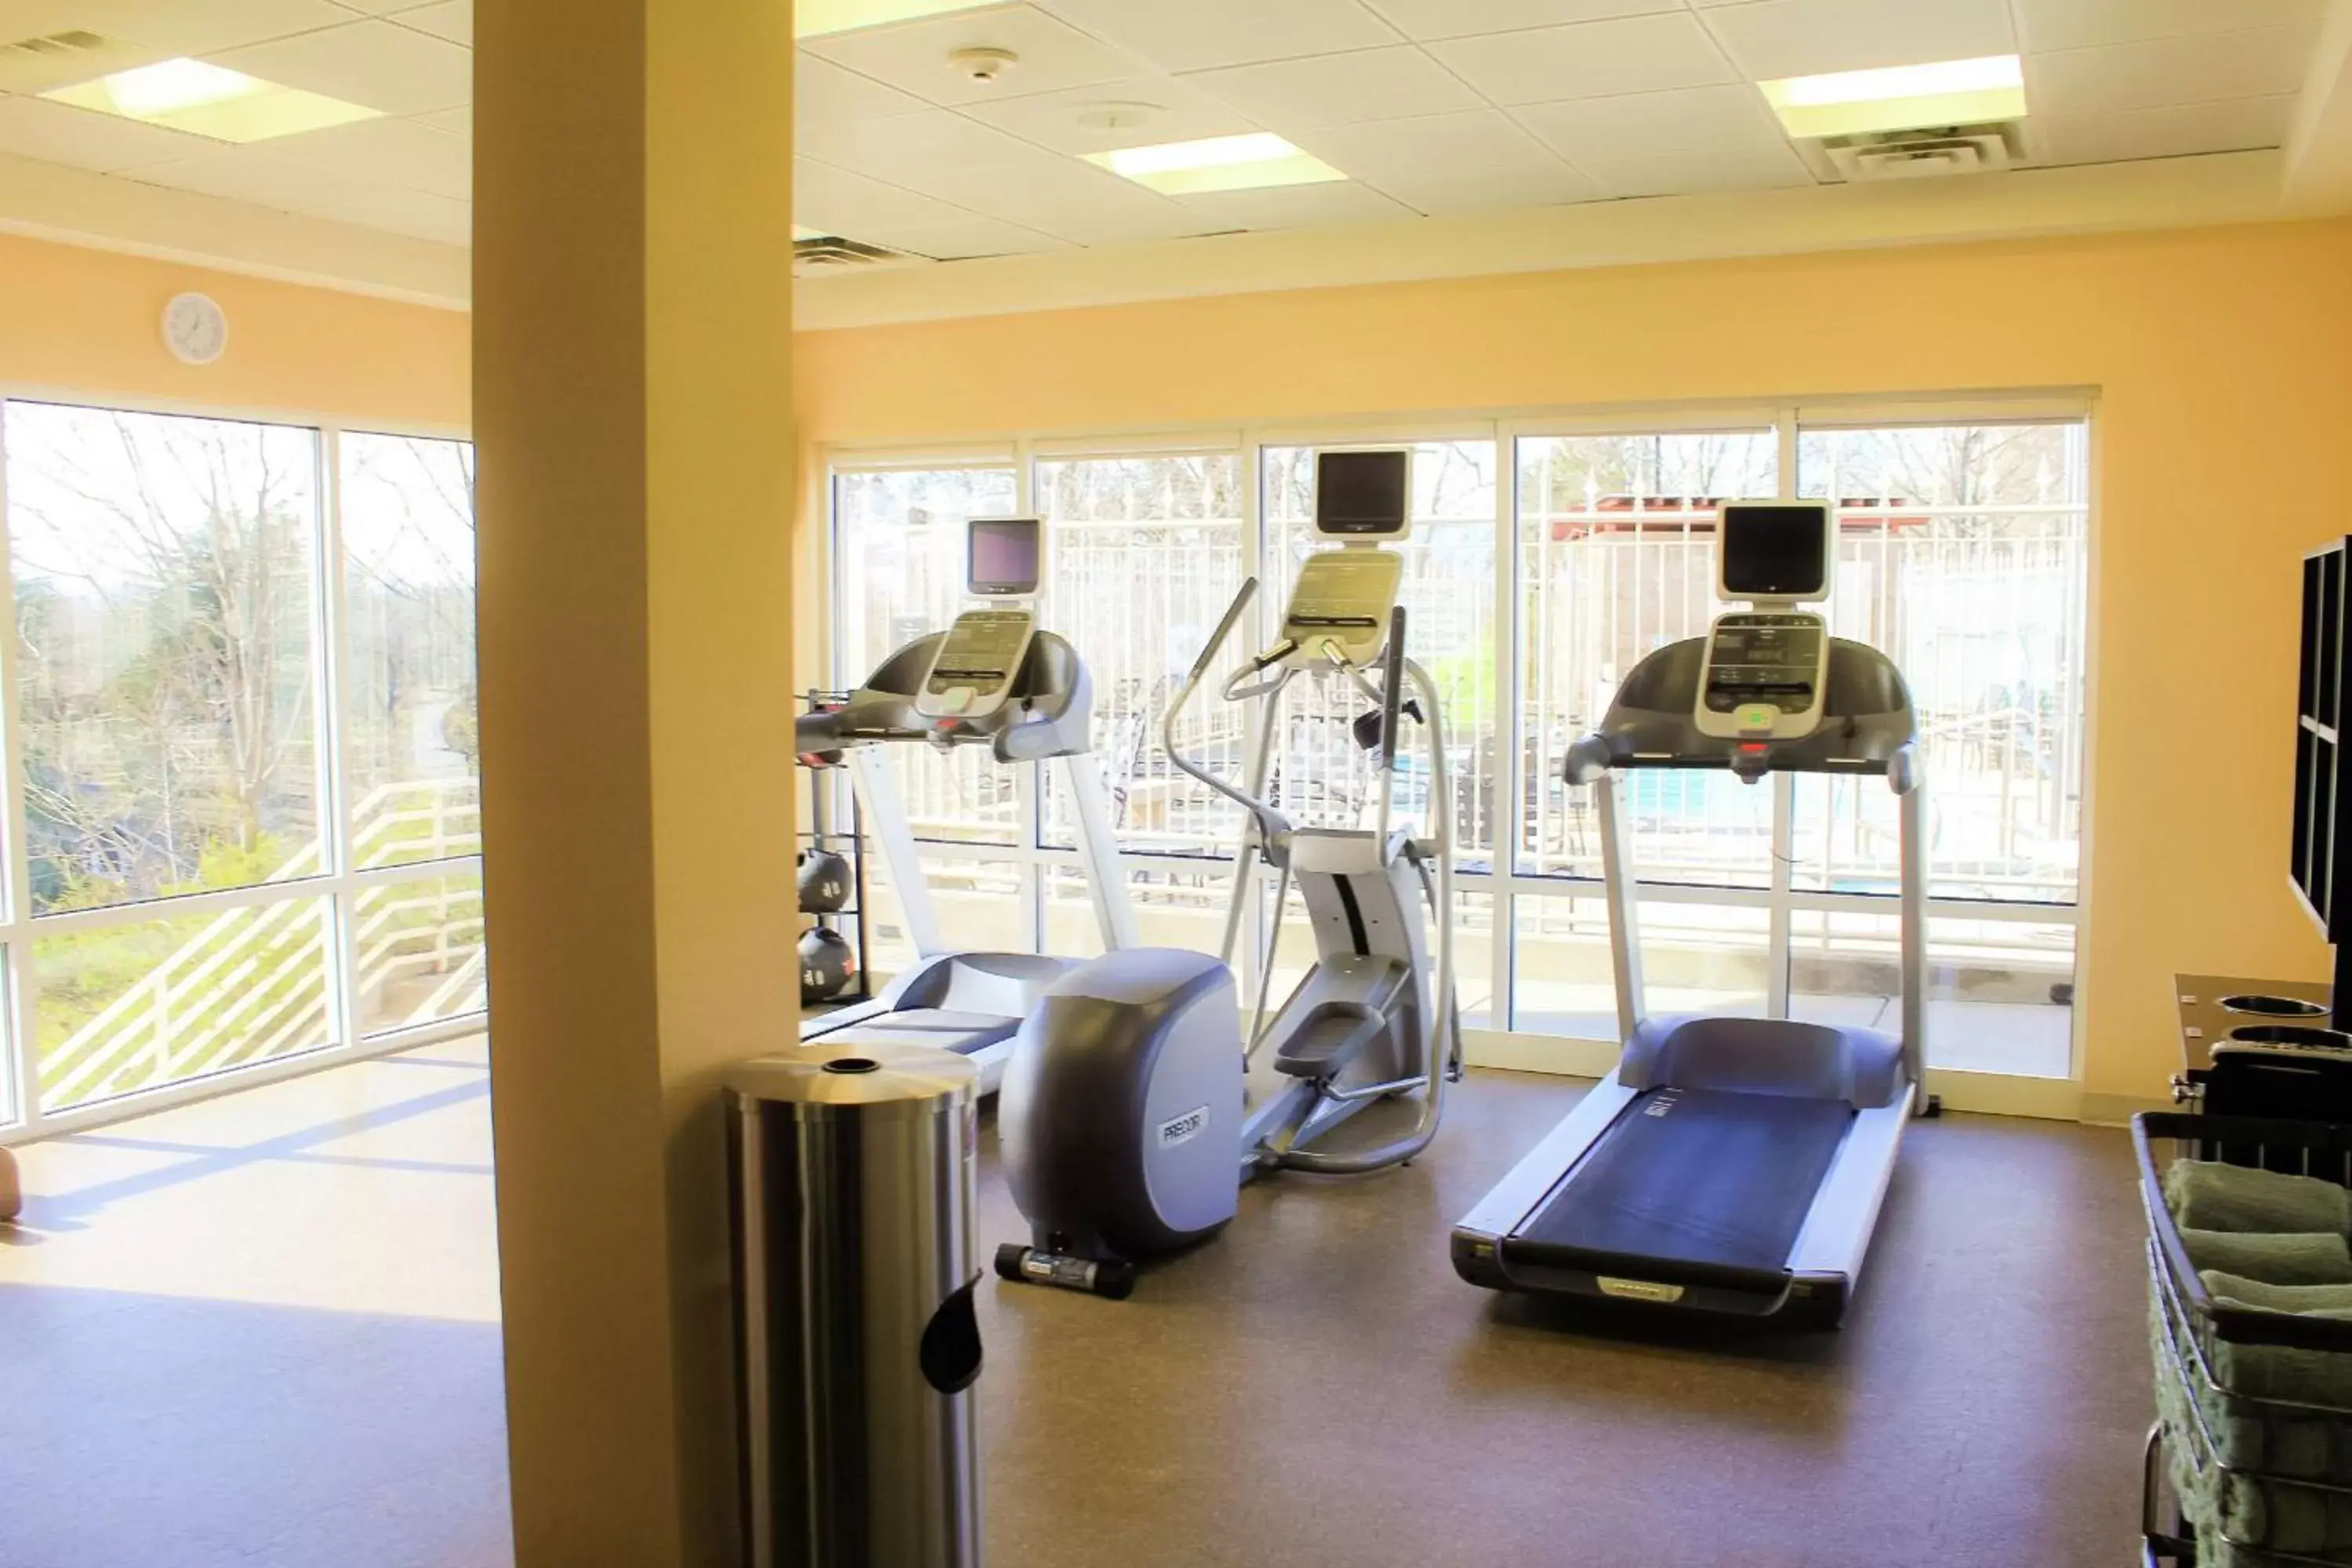 Fitness centre/facilities, Fitness Center/Facilities in Hilton Garden Inn Redding